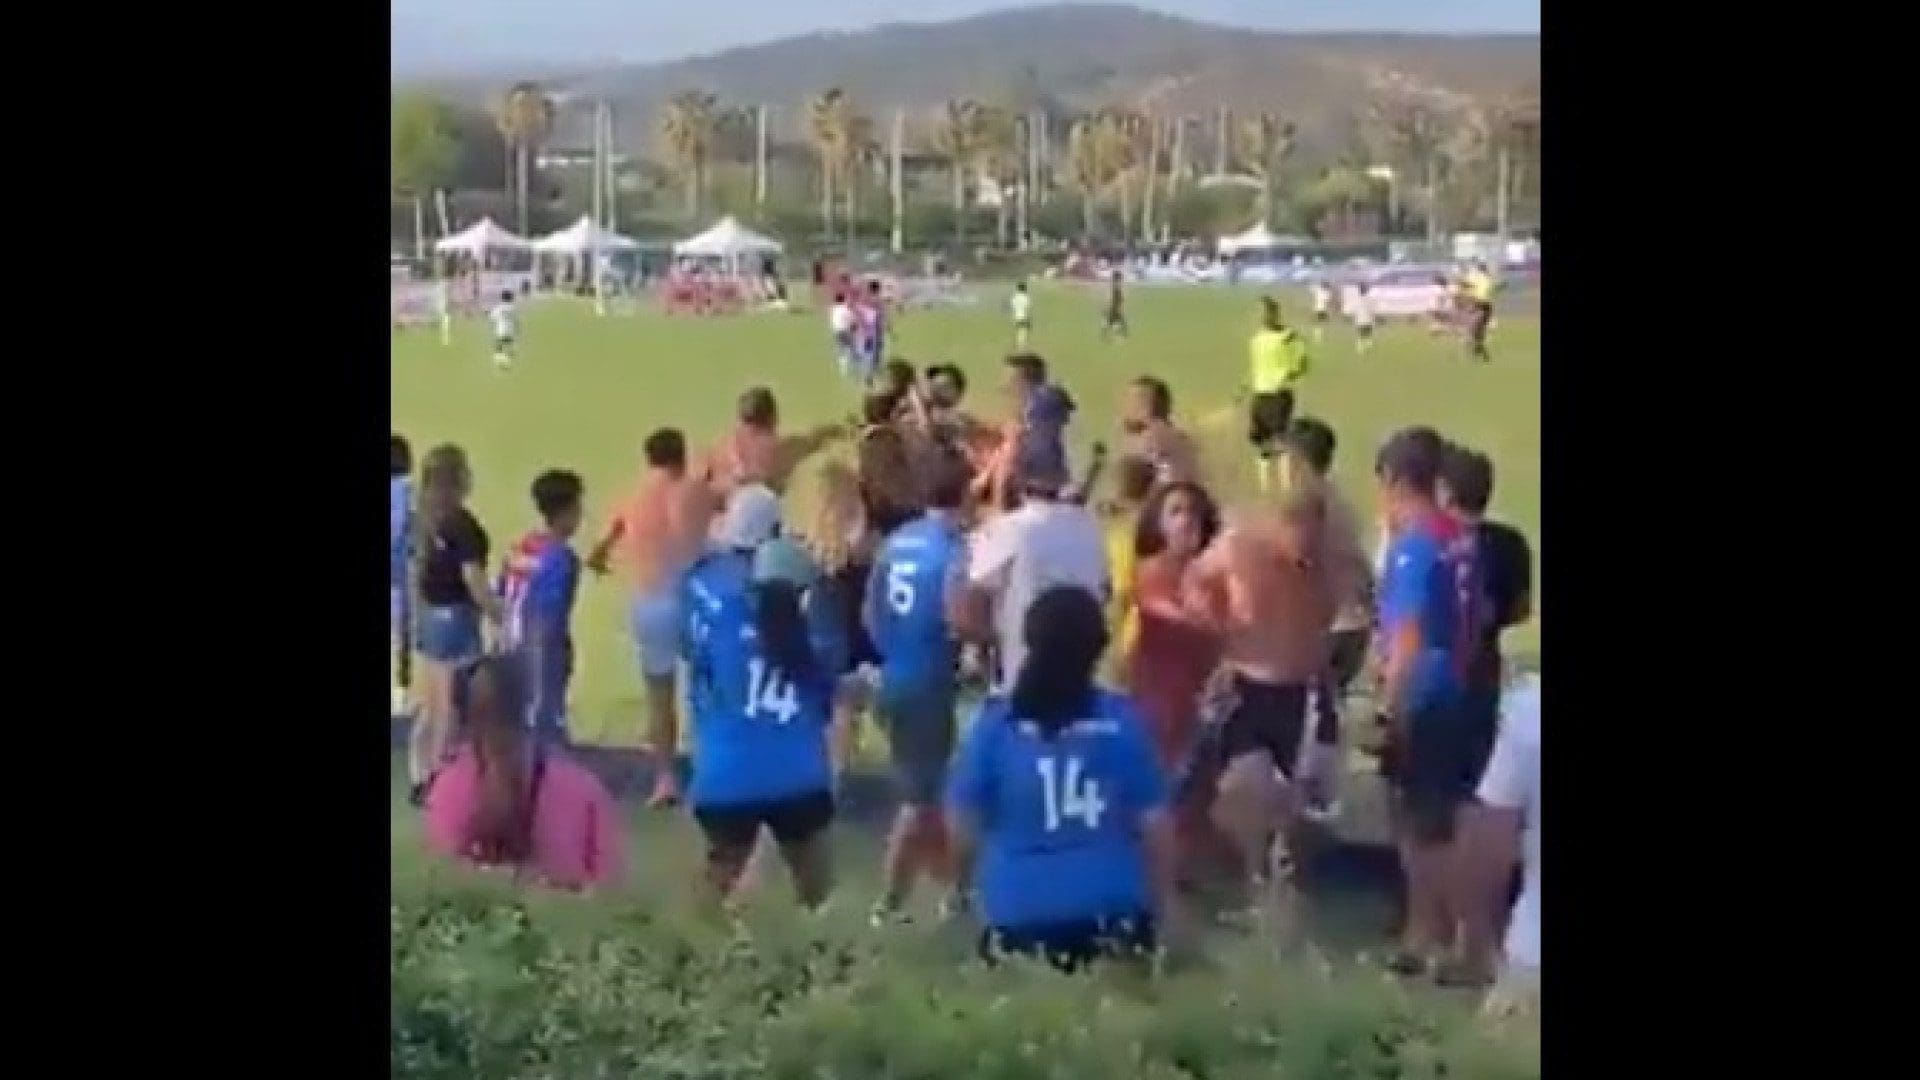 Português agredido em torneio de futebol infantil na Andaluzia